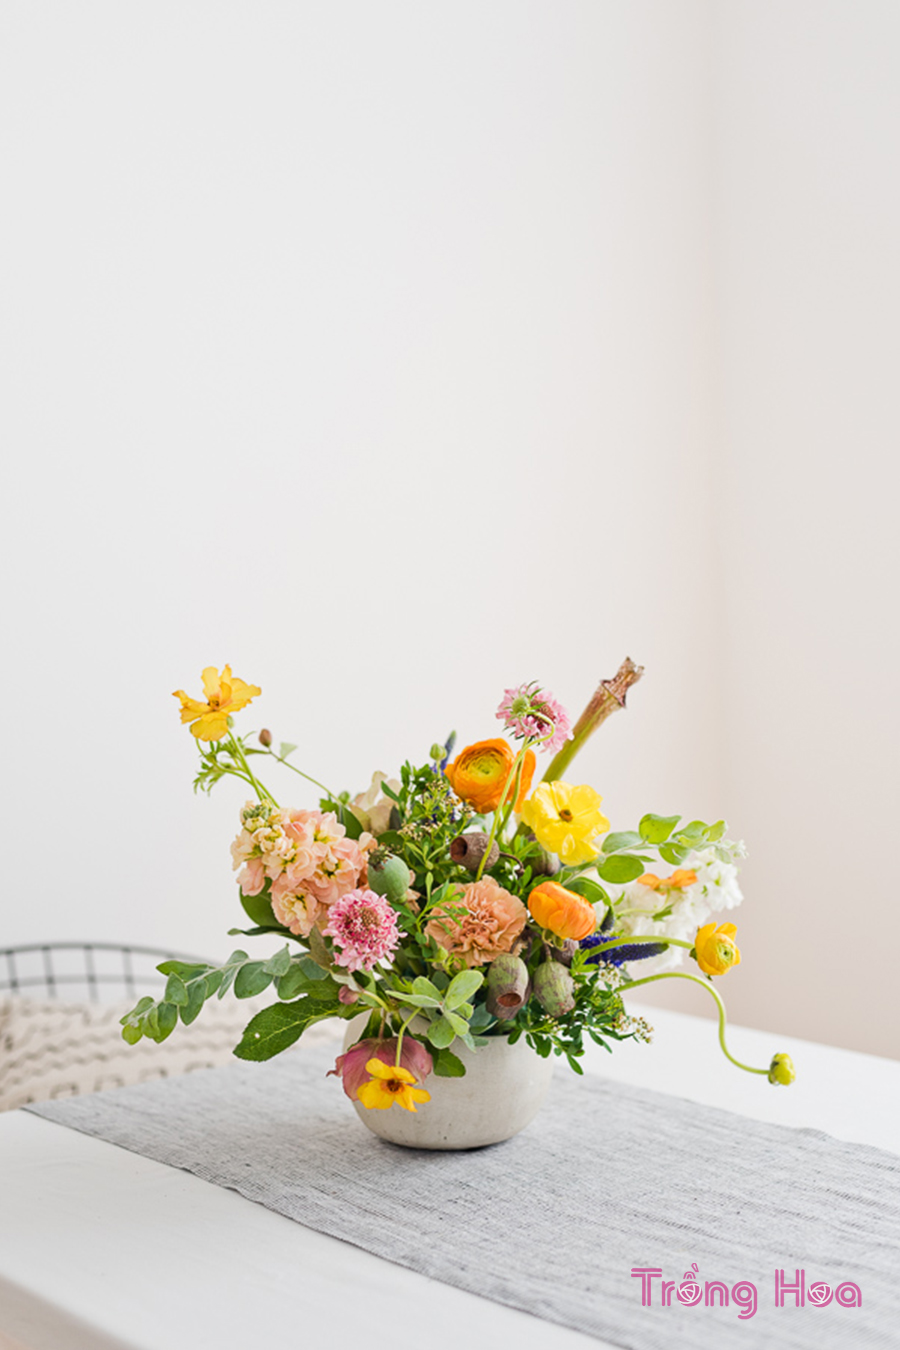 Cách sắp xếp và cắm hoa để bàn hoàn hảo